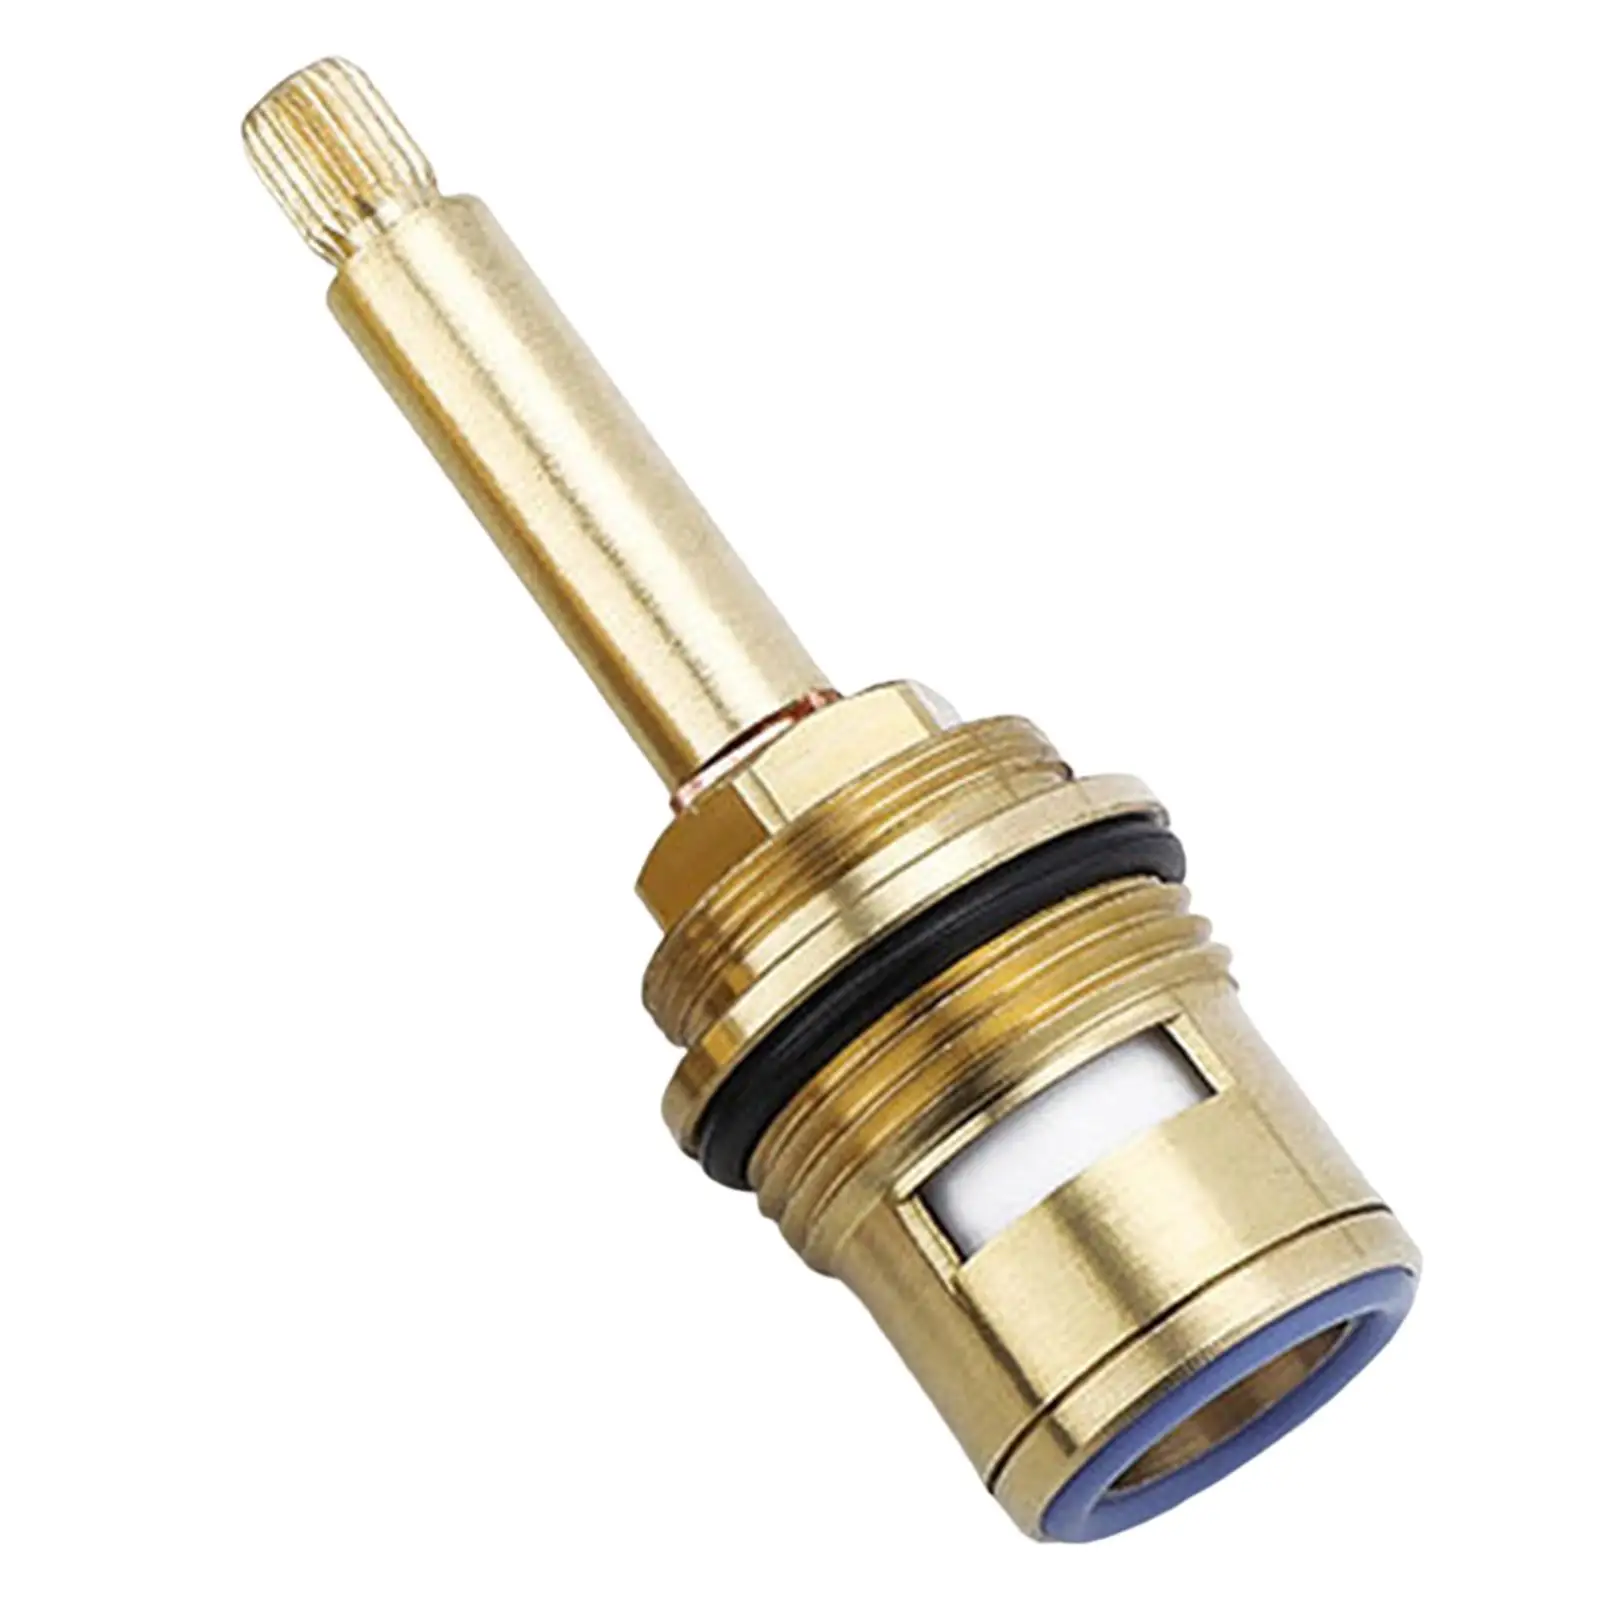 Brass ceramic stem disc cartridges for faucet valves, operating temperature: